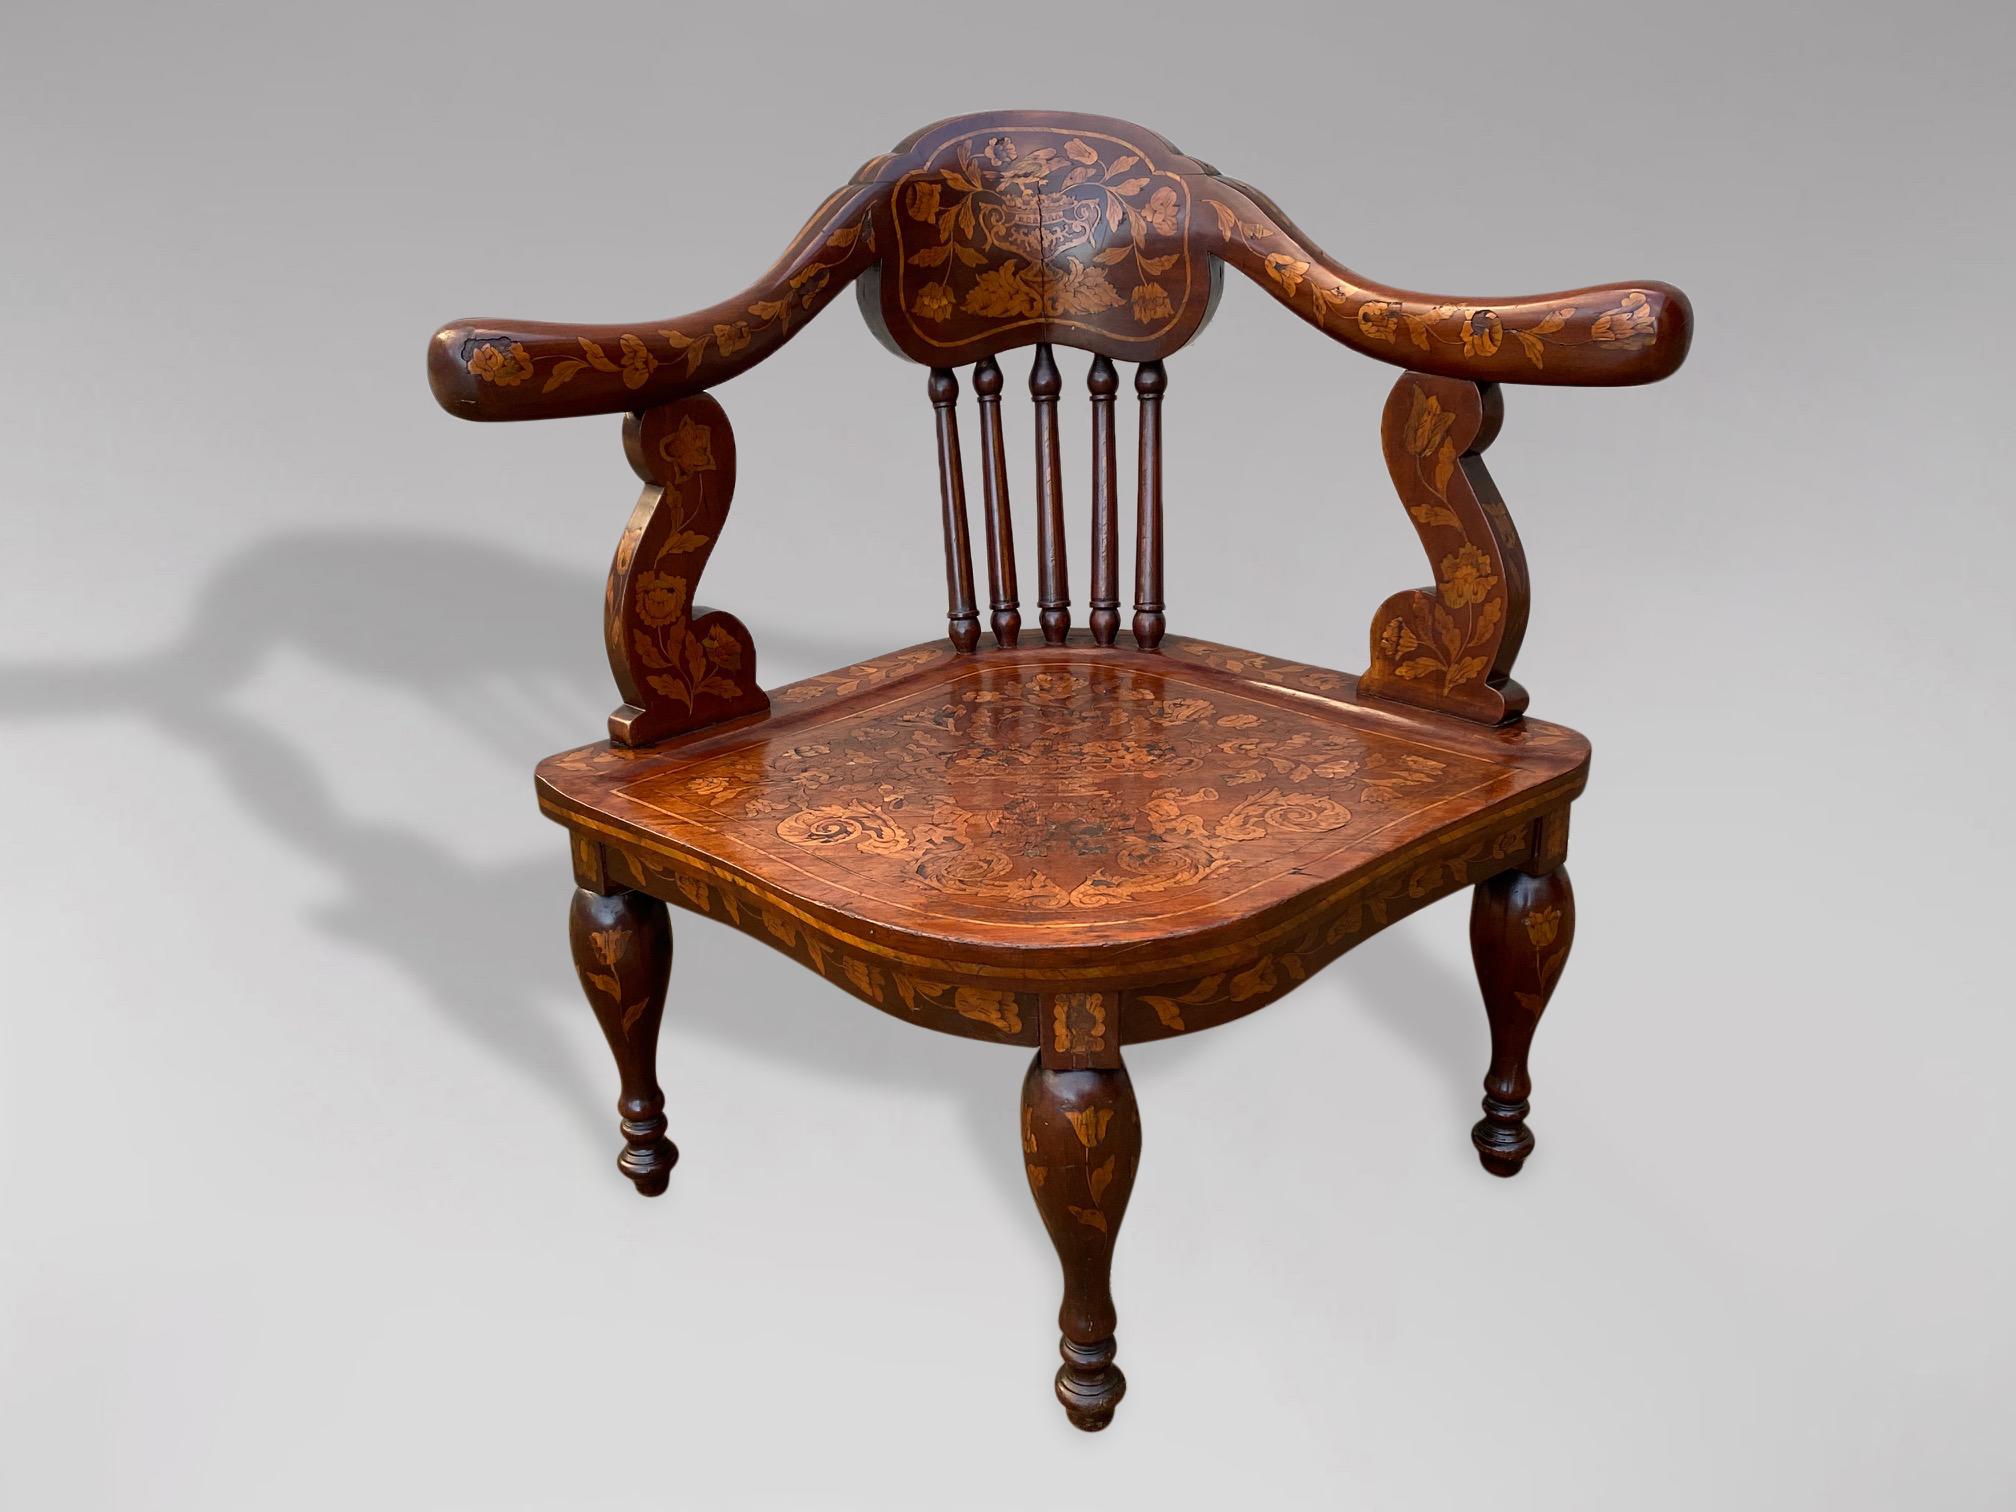 Chaise d'angle hollandaise du 18e siècle en acajou et marqueterie. La traverse supérieure en forme est soutenue par des supports tournés en forme de balustre, avec une belle assise en marqueterie élaborée reposant sur trois pieds tournés en forme de